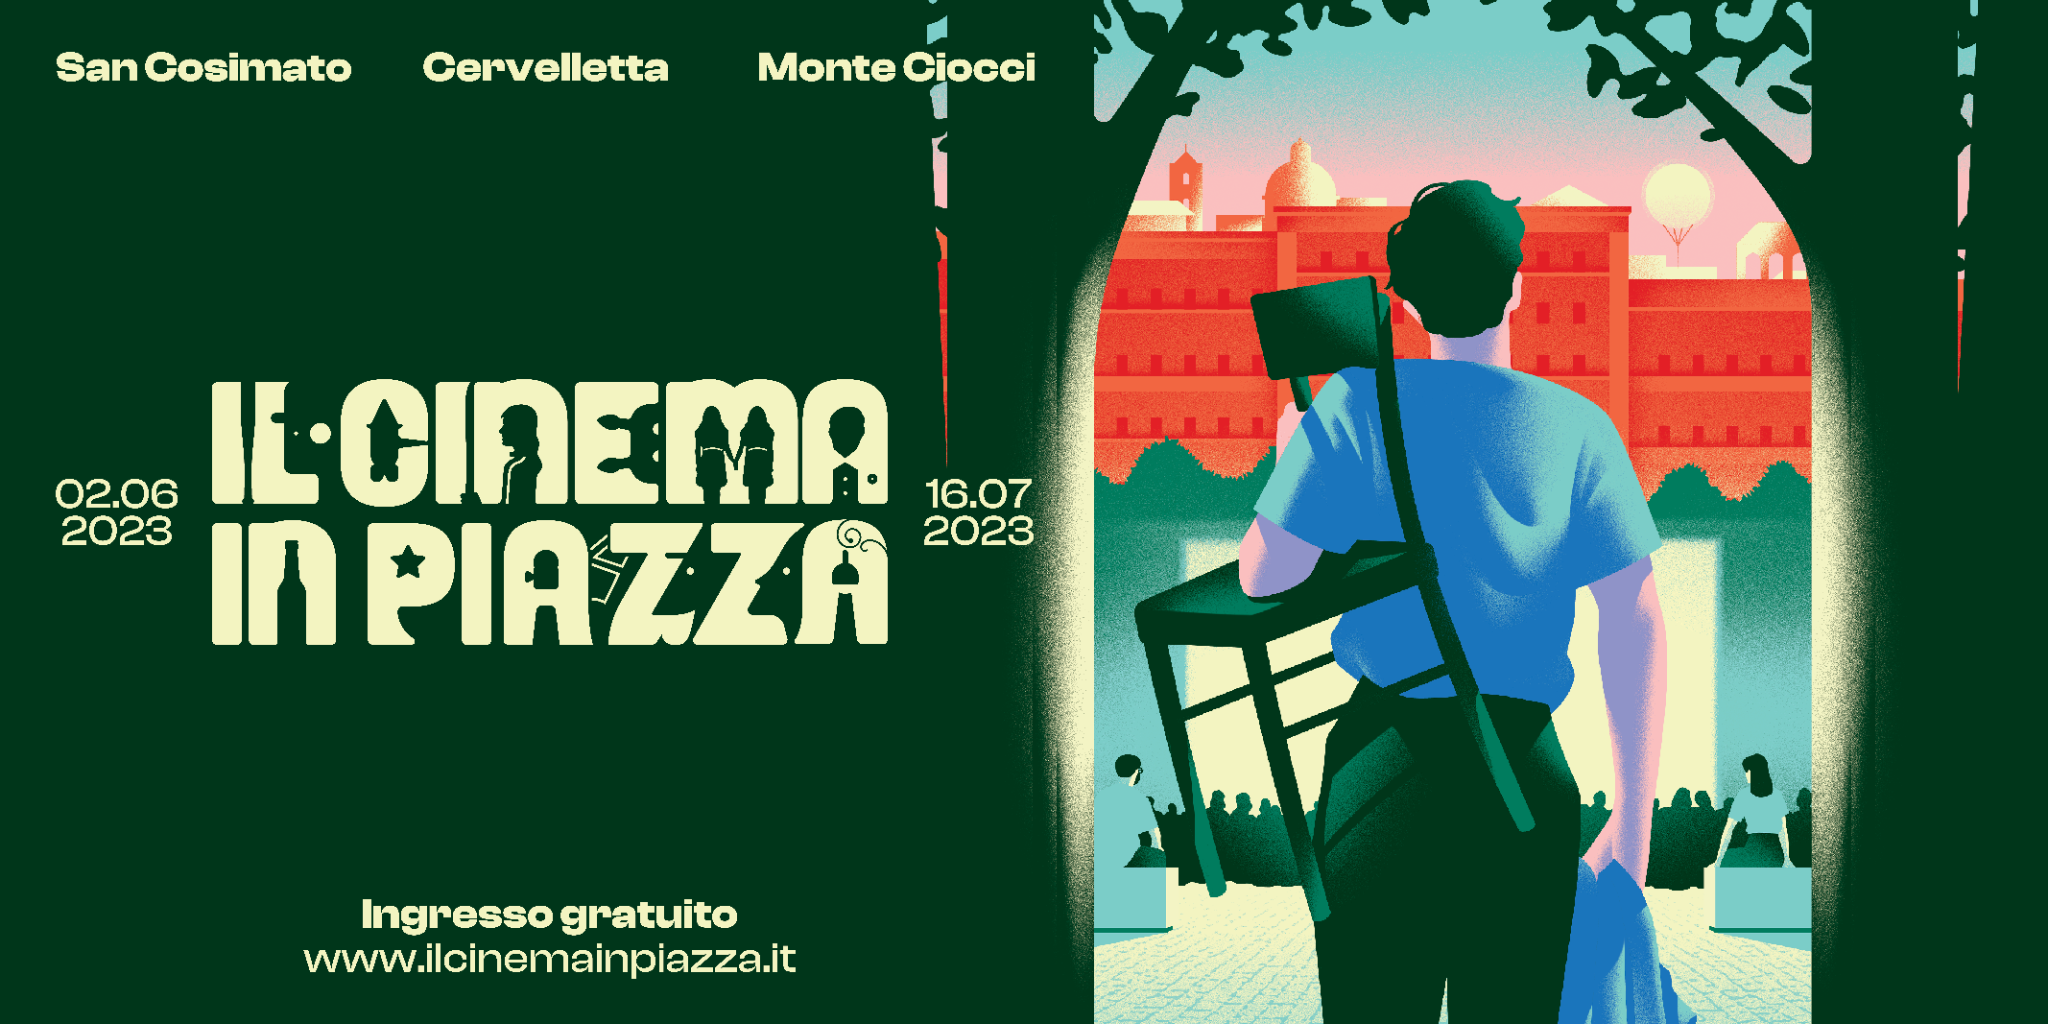 Torna "Il Cinema in Piazza" dal 2 giugno al 16 luglio, annunciato oggi il programma completo